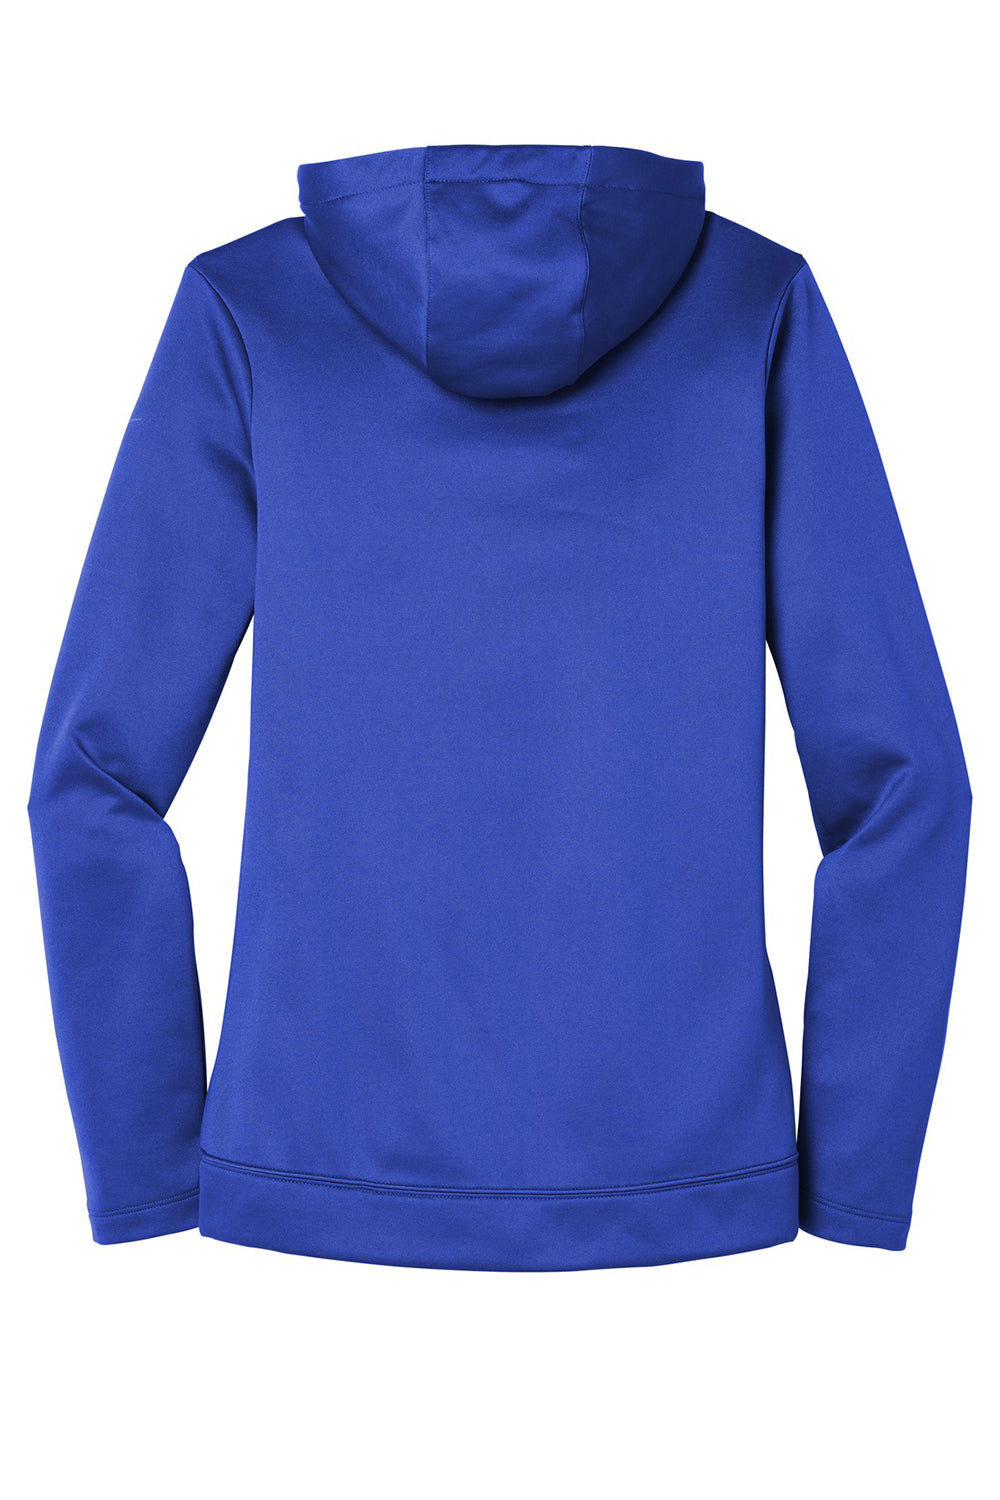 Nike NKAH6264 Womens Therma-Fit Moisture Wicking Fleece Full Zip Hooded Sweatshirt Hoodie Game Royal Blue Flat Back